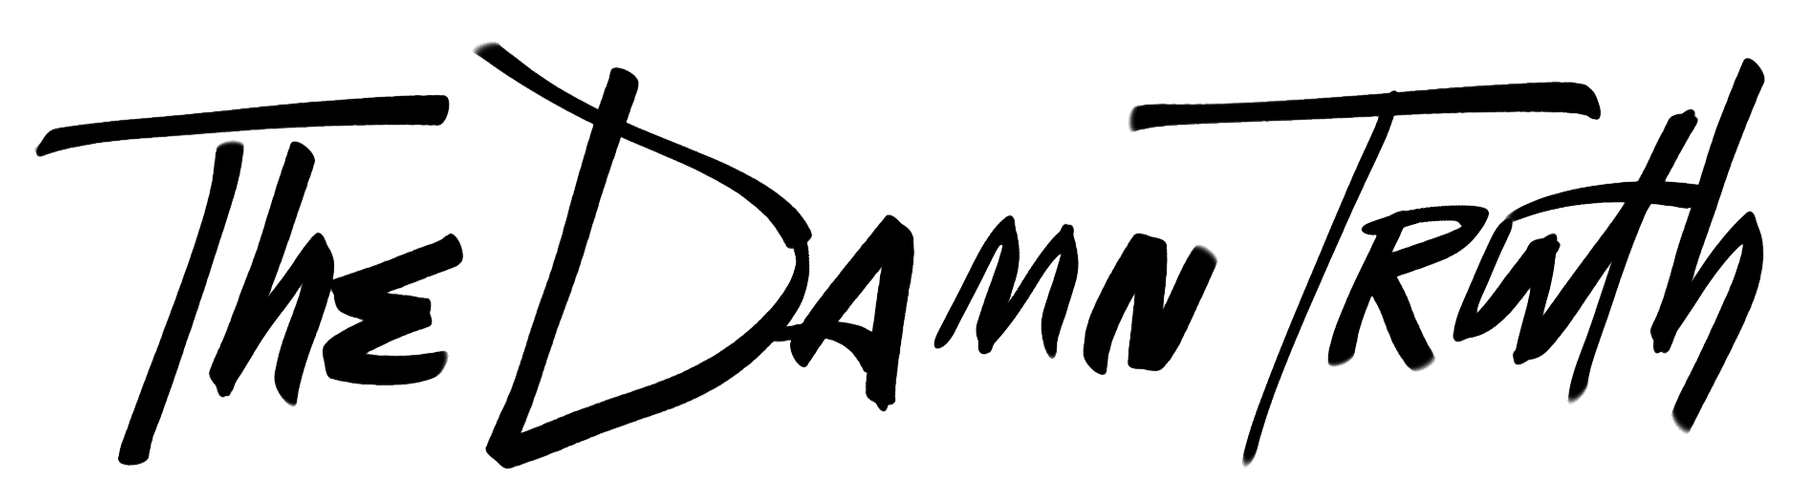 Damn Logo - T-SHIRTS | - 2016 LOGO design - 2017 TRIANGLE design - / The Damn Truth